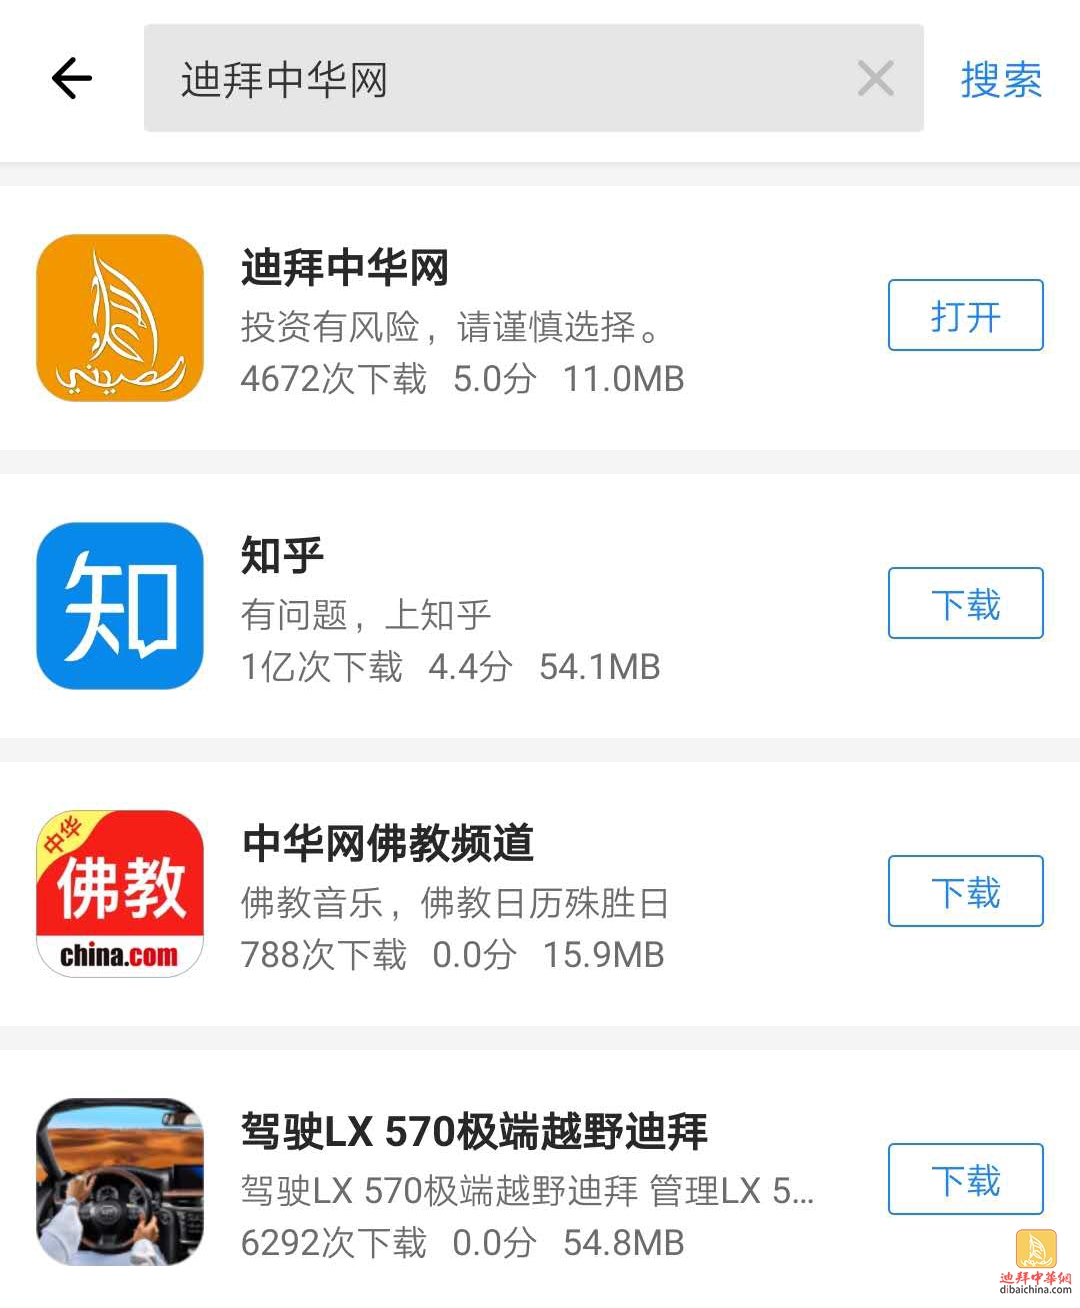 迪拜中华网app在应用宝上上线啦！快捷下载，玩转迪拜！